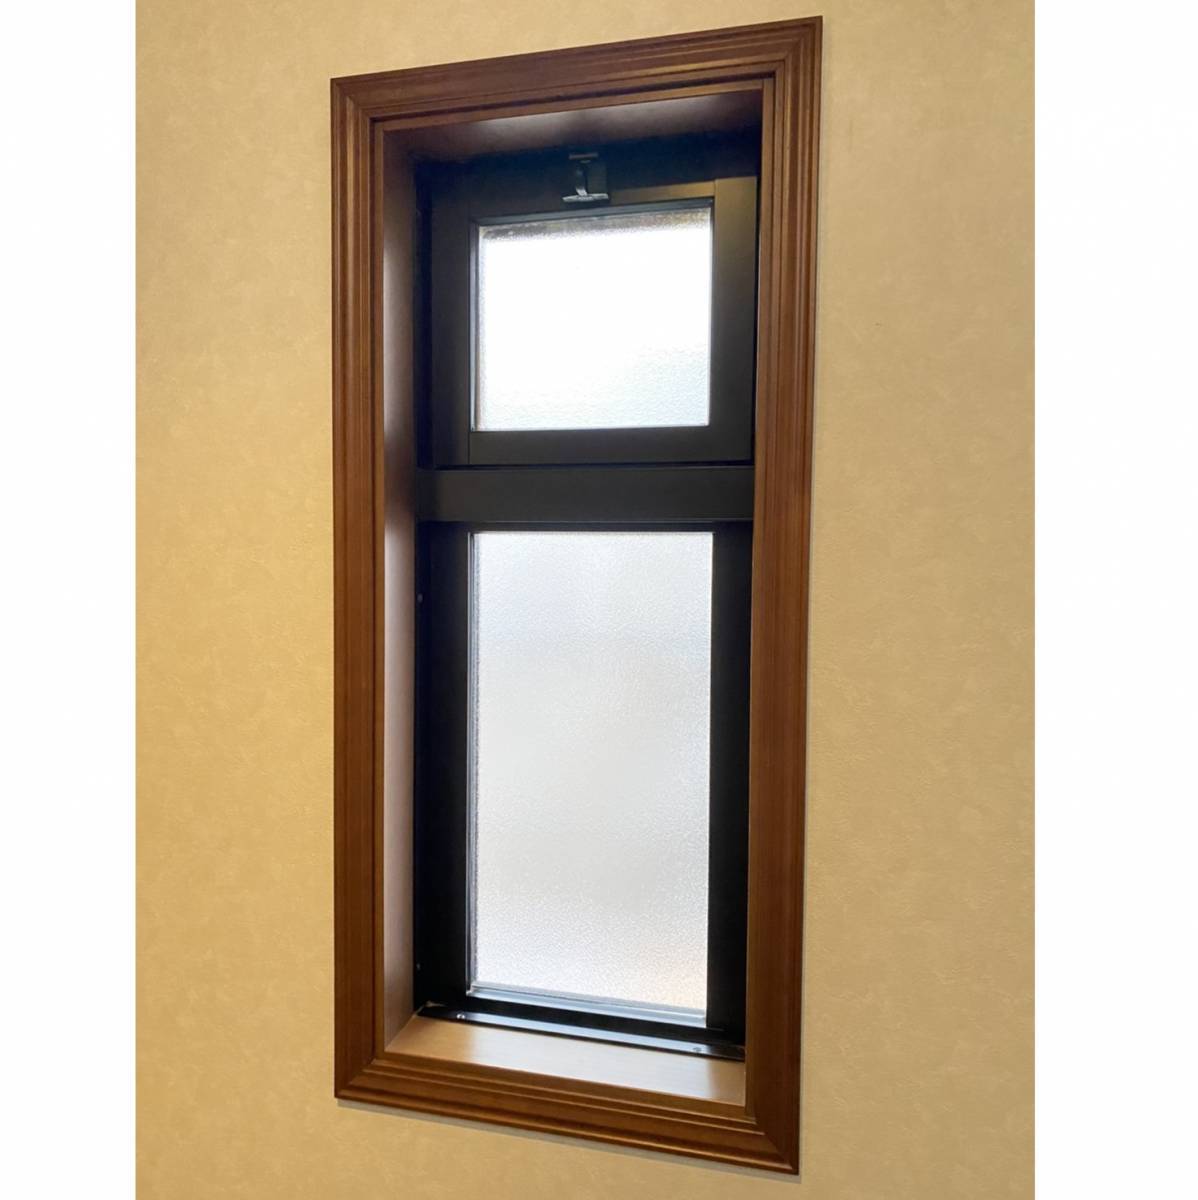 窓工房テラムラの窓際が寒いので断熱サッシに交換したい。できれば窓の構成も変更したいです。の施工前の写真1